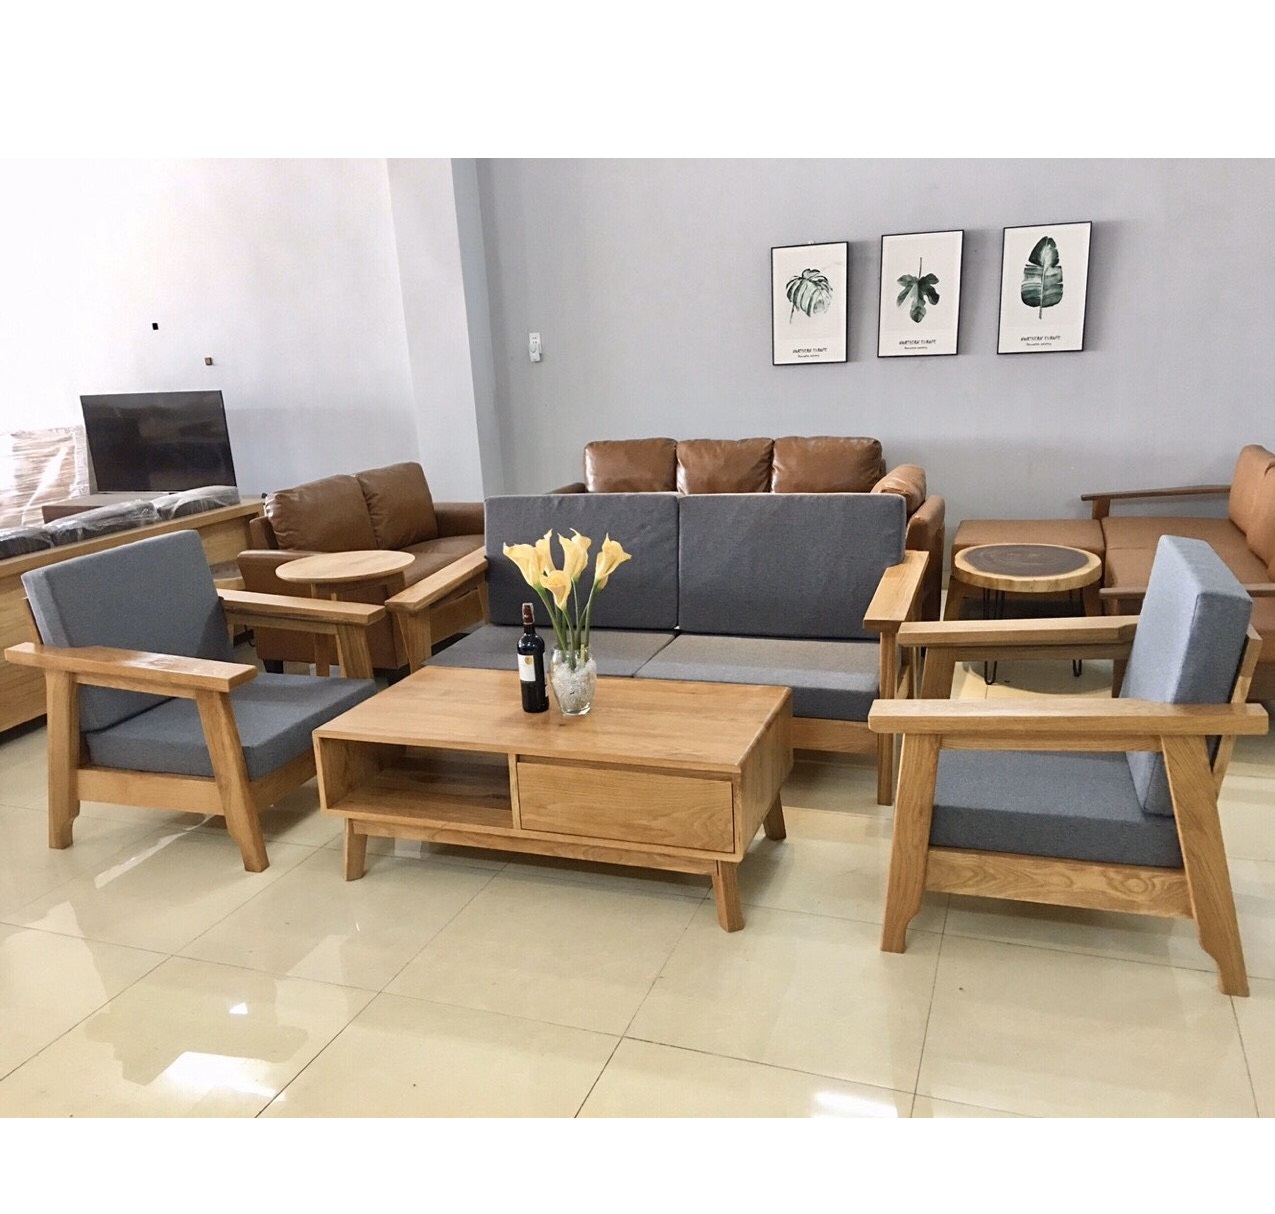 Bộ bàn ghế phòng khách 5 món gỗ sồi Mỹ - loại A: Với chất lượng gỗ sồi Mỹ loại A, bộ bàn ghế phòng khách này sẽ mang lại cho gia đình bạn sự sang trọng và hoàn hảo trong từng chi tiết. Hãy cùng lựa chọn bộ sản phẩm tuyệt vời này để tạo nên một không gian sống đẳng cấp và đáng mơ ước!